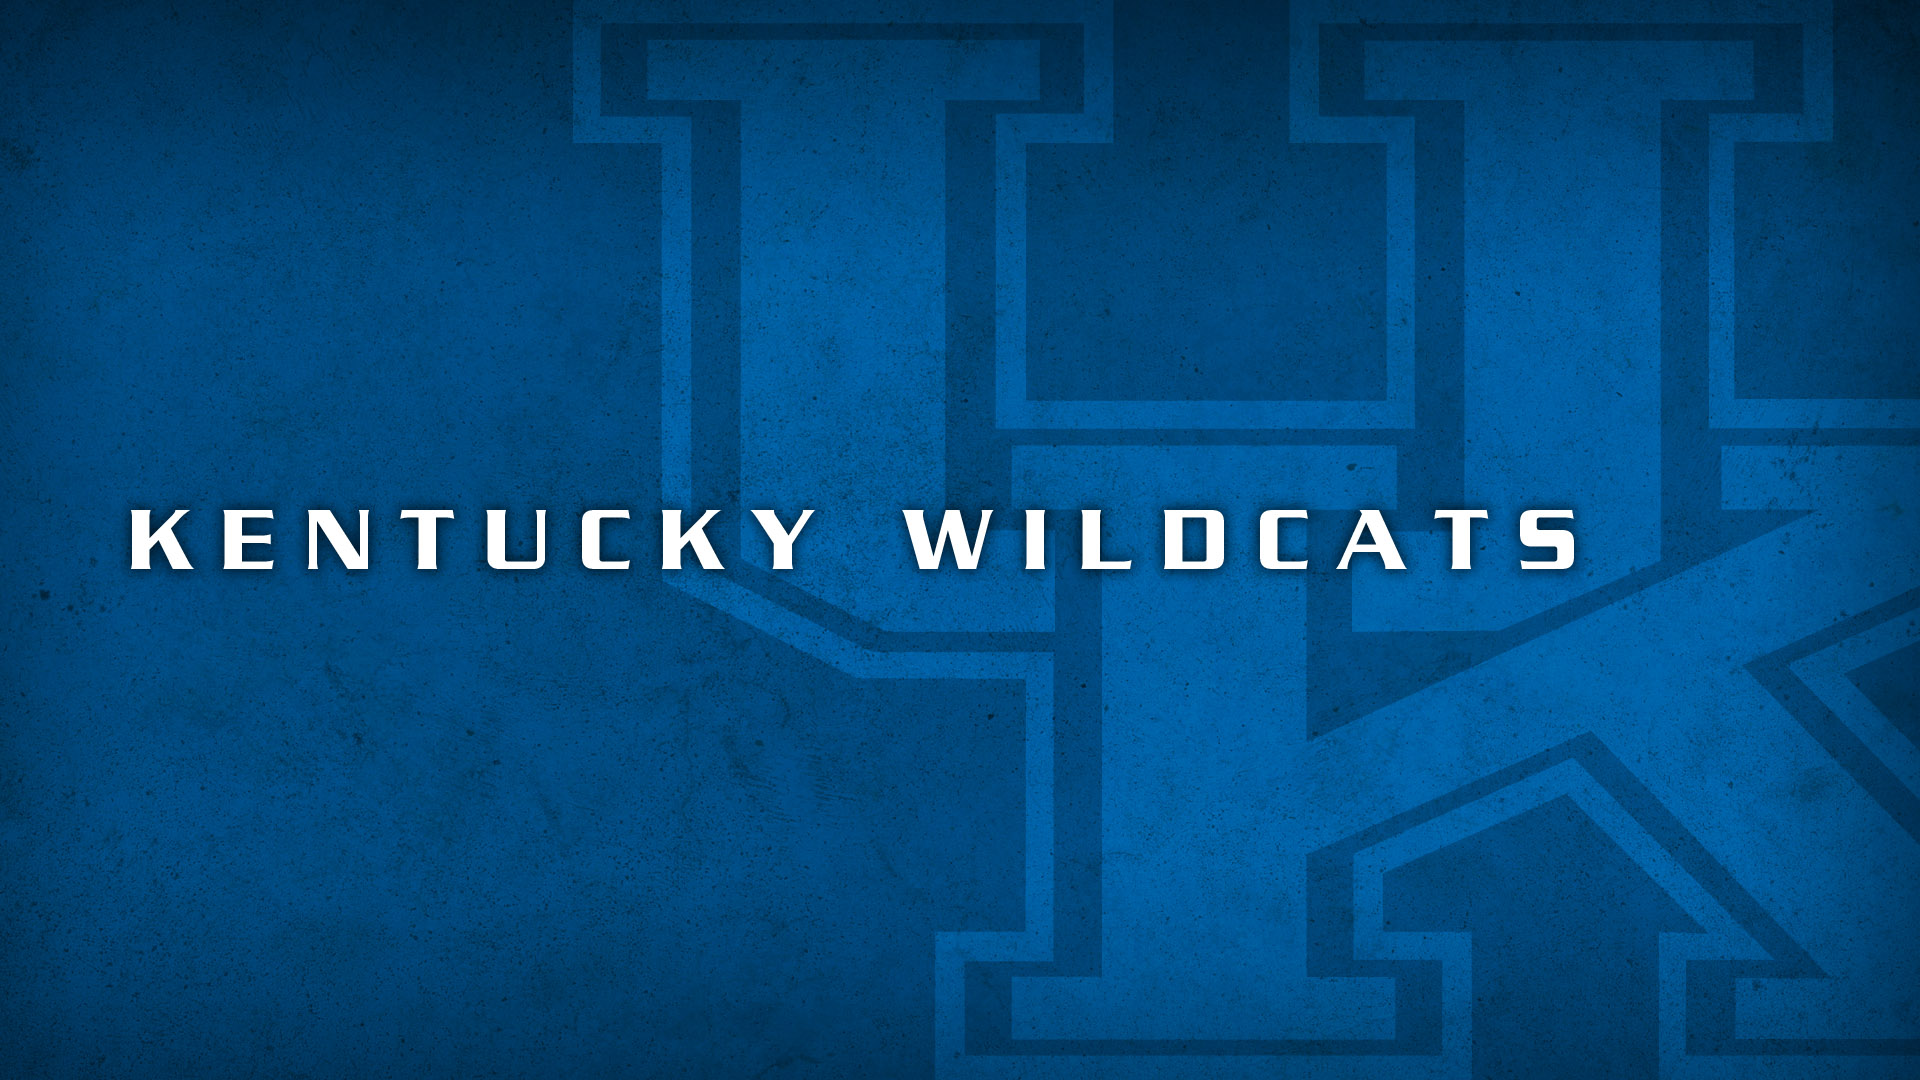 Kentucky Wildcats Logo 1920 x 1080 1600 x 1200 1920x1080